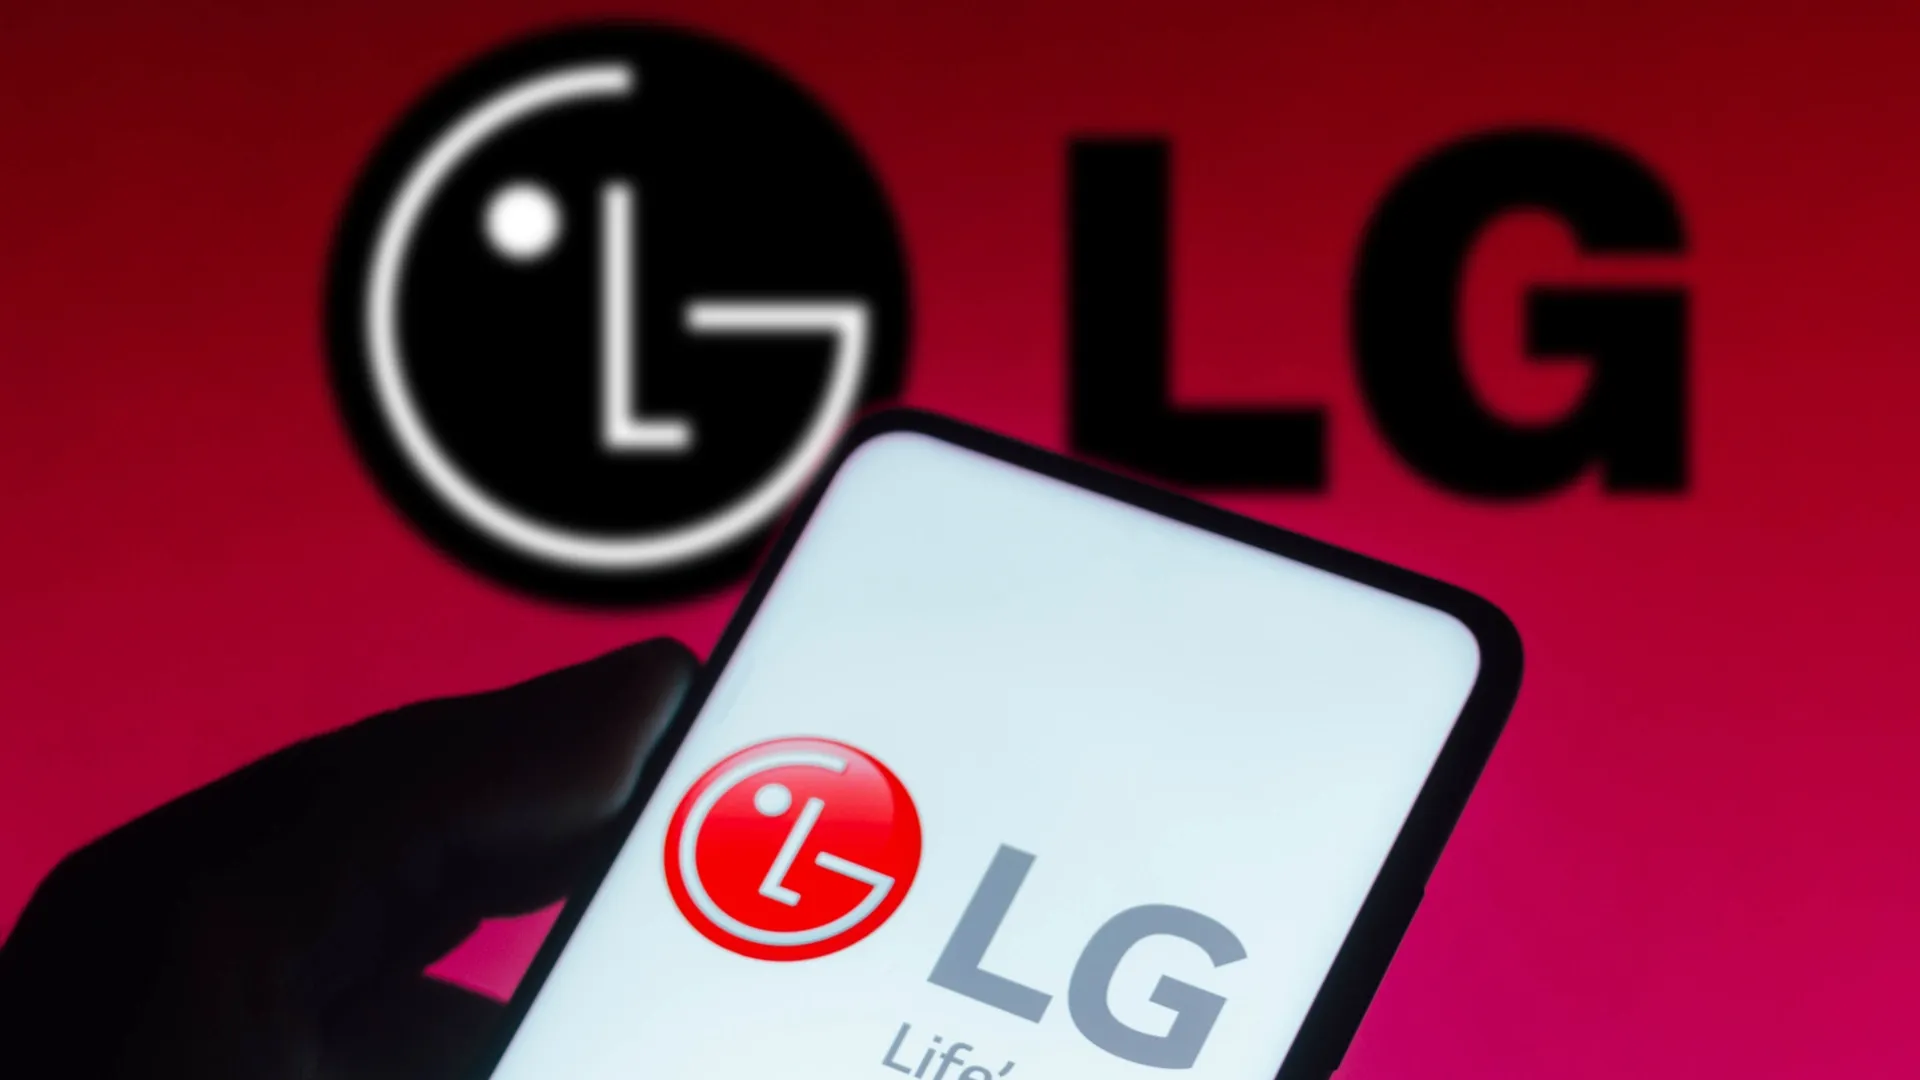 Celular LG ainda vale a pena mesmo com a saída desse segmento?